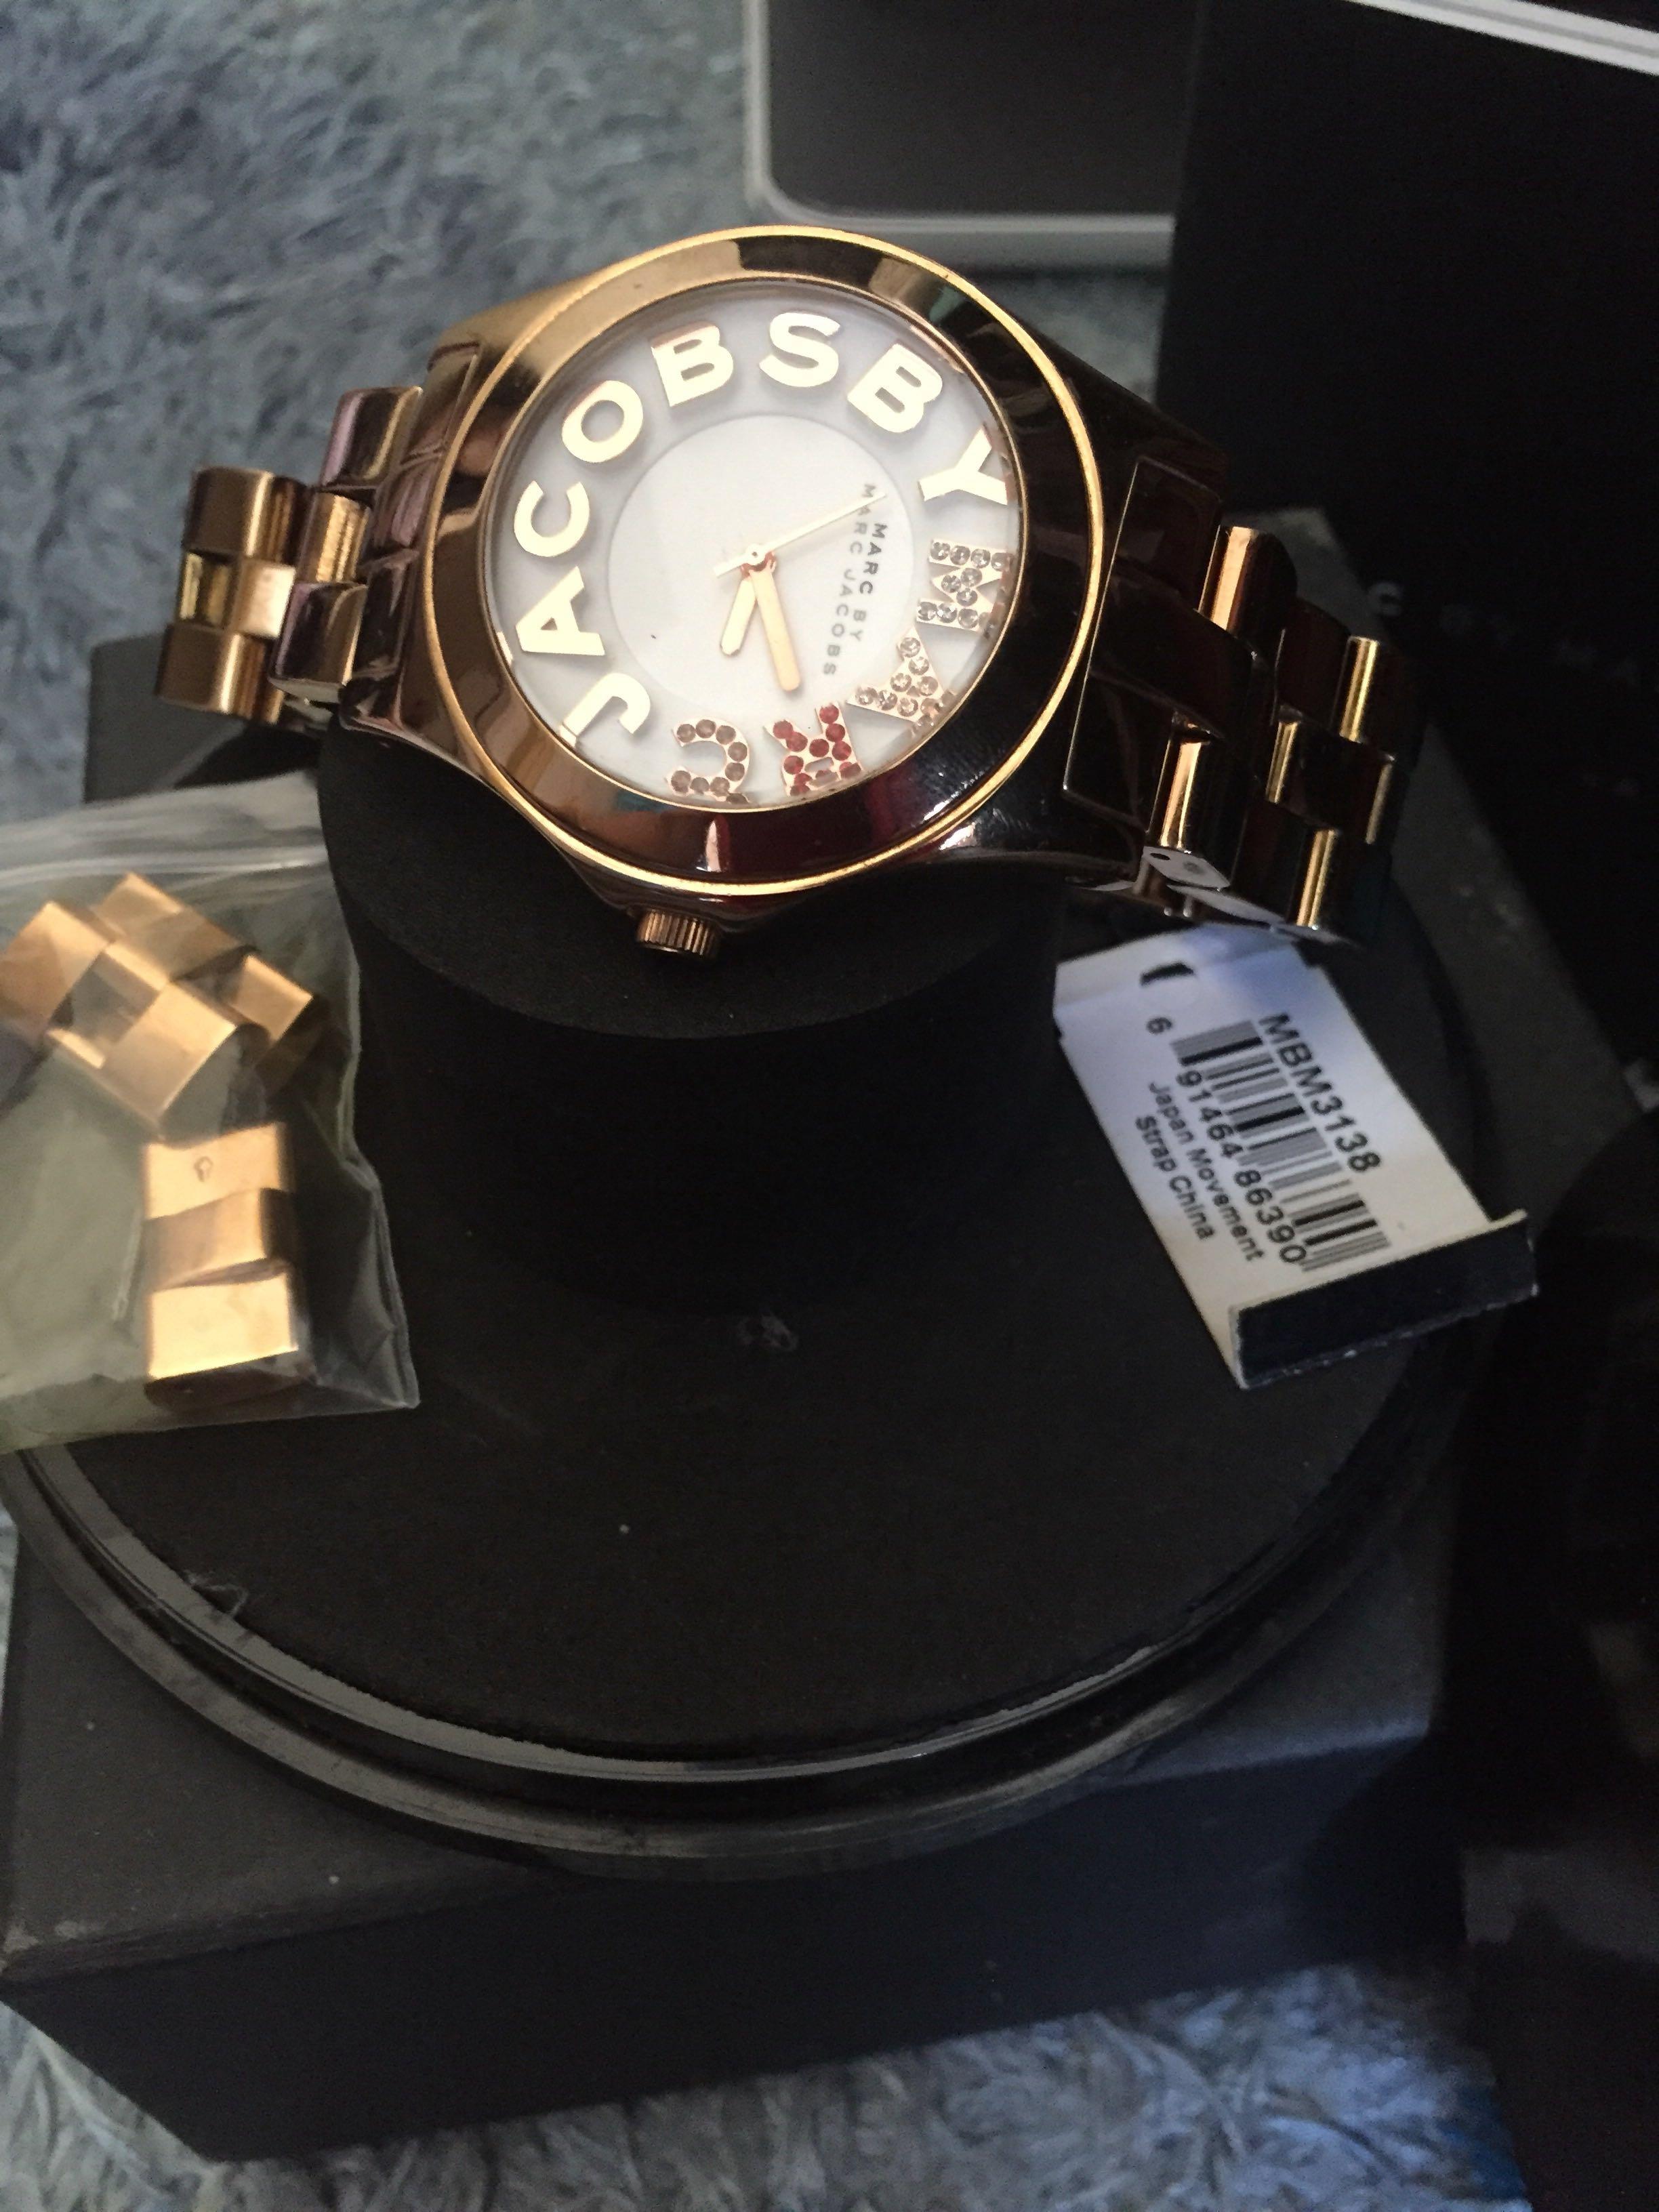 3150円 日本全国送料無料 Y9673M コーチ COACH クオーツ レディース 腕時計 W014